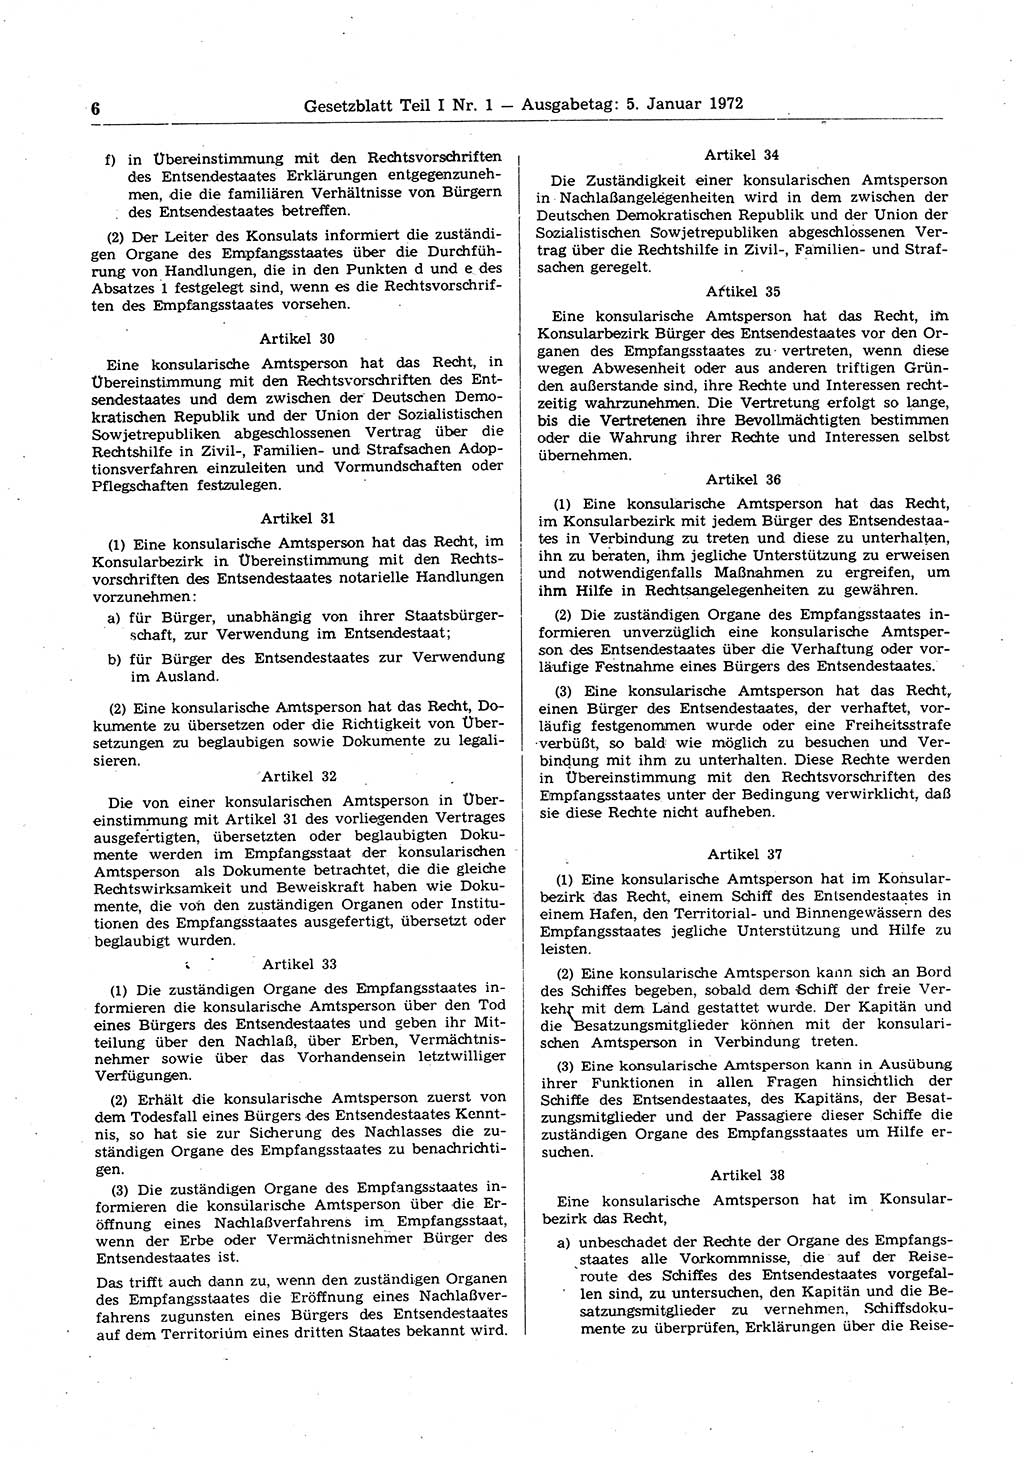 Gesetzblatt (GBl.) der Deutschen Demokratischen Republik (DDR) Teil Ⅰ 1972, Seite 6 (GBl. DDR Ⅰ 1972, S. 6)